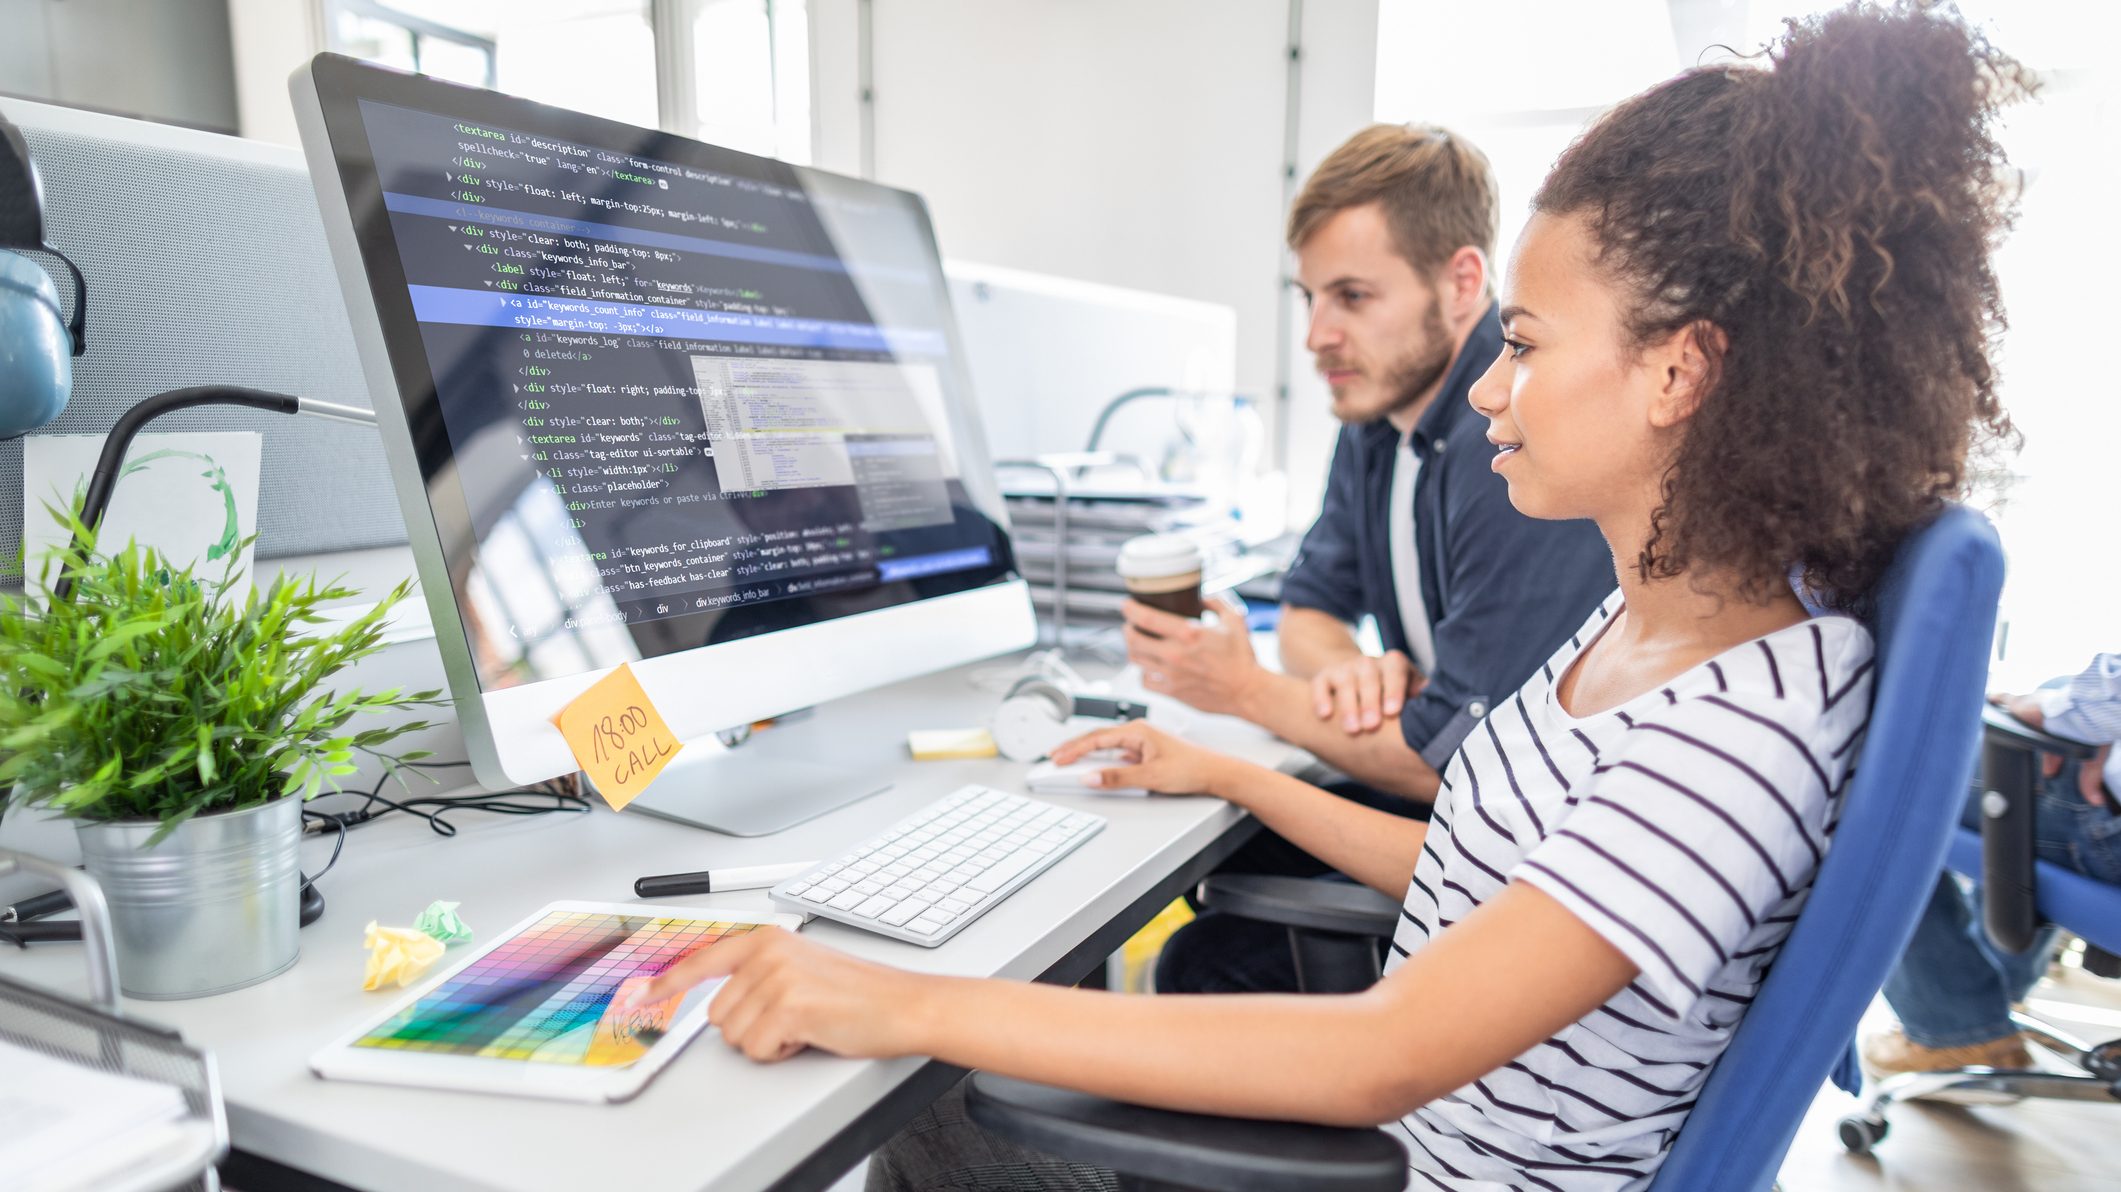 Foto de jovem negra em frente a um computador com tela grande, onde estão projetadas linhas de código. Ao lado dela há um jovem que olha para a tela enquanto ela toca no mouse.